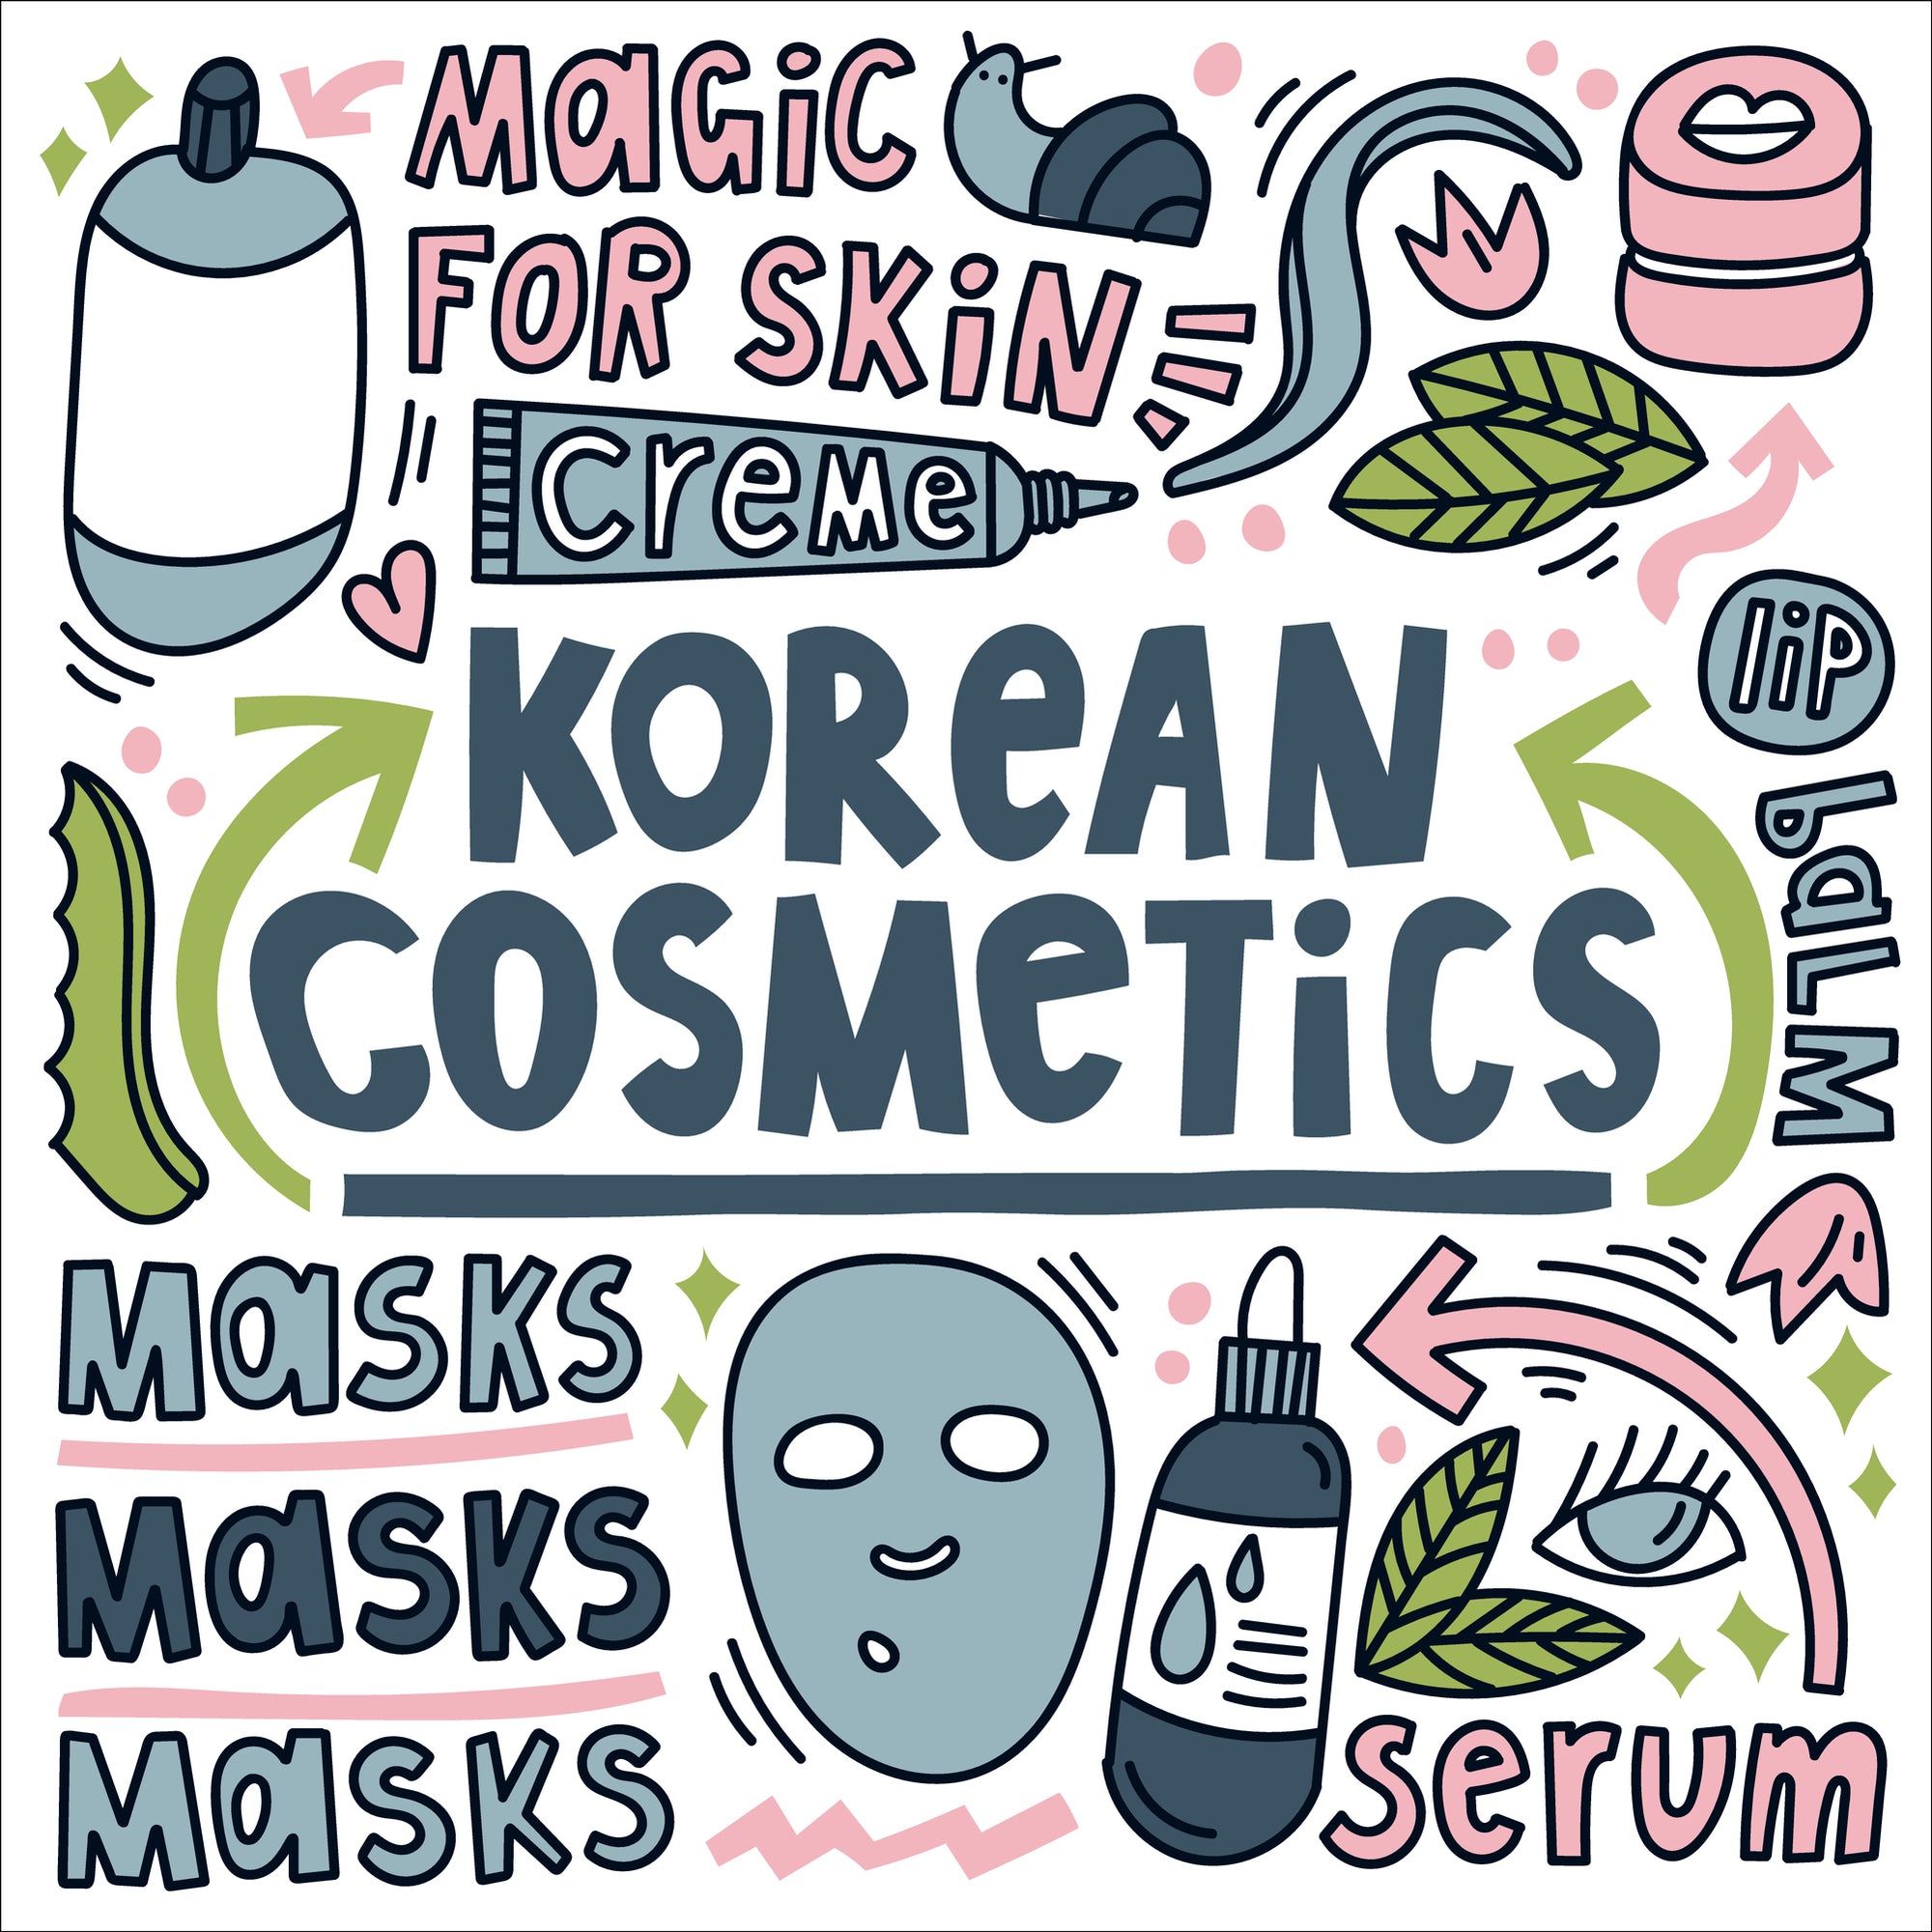 Korean Skincare routine 101